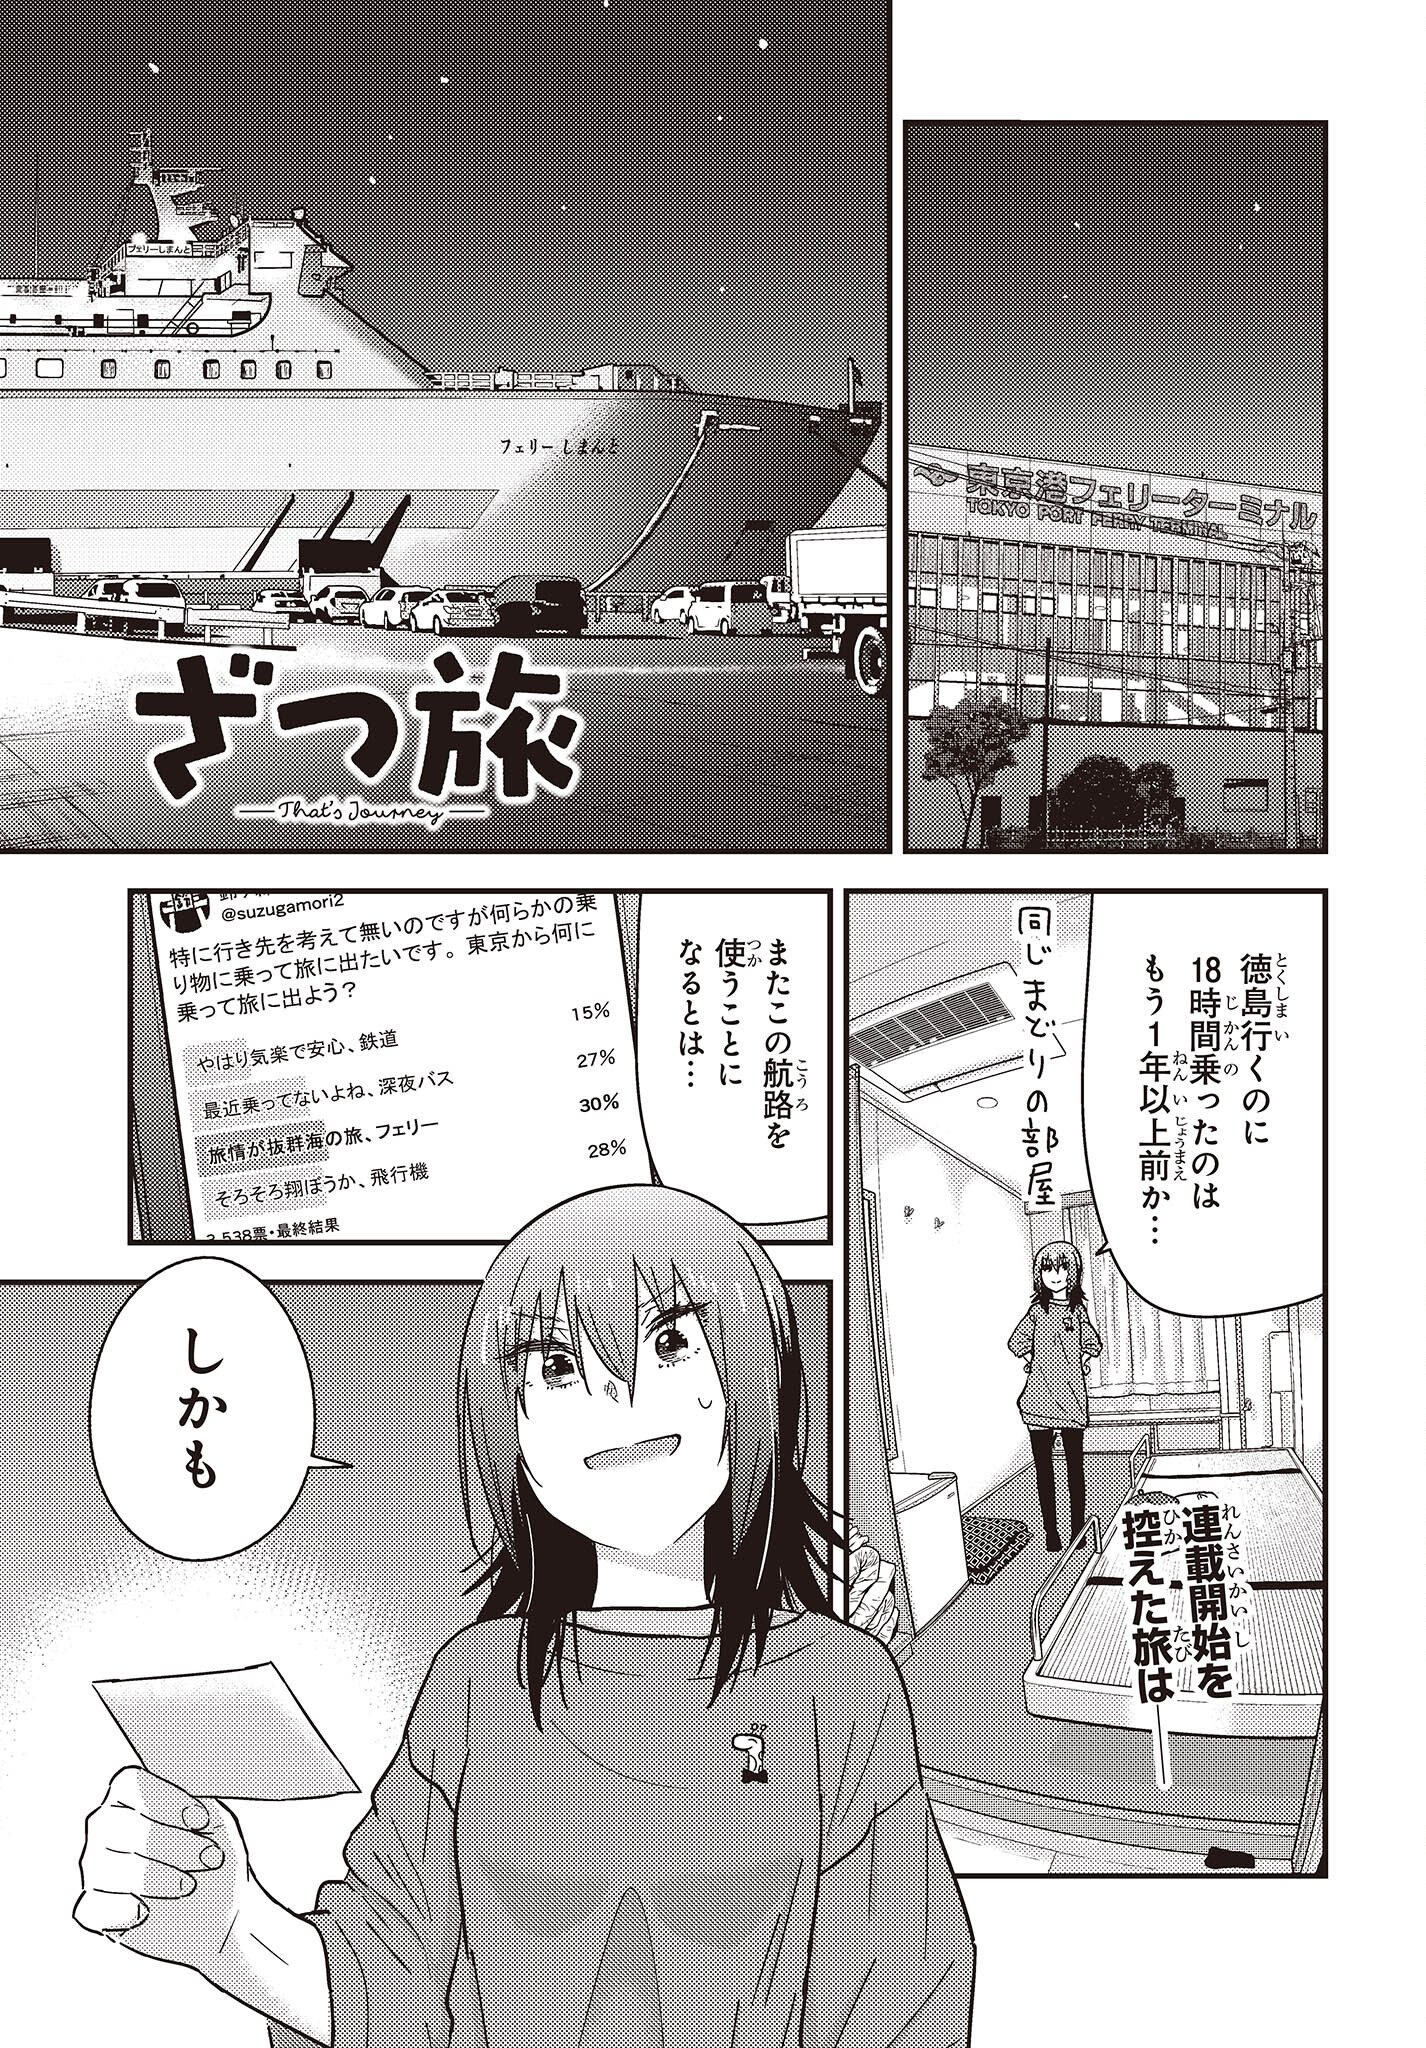 ざつ旅-That’s Journey- 第34話 - Page 1